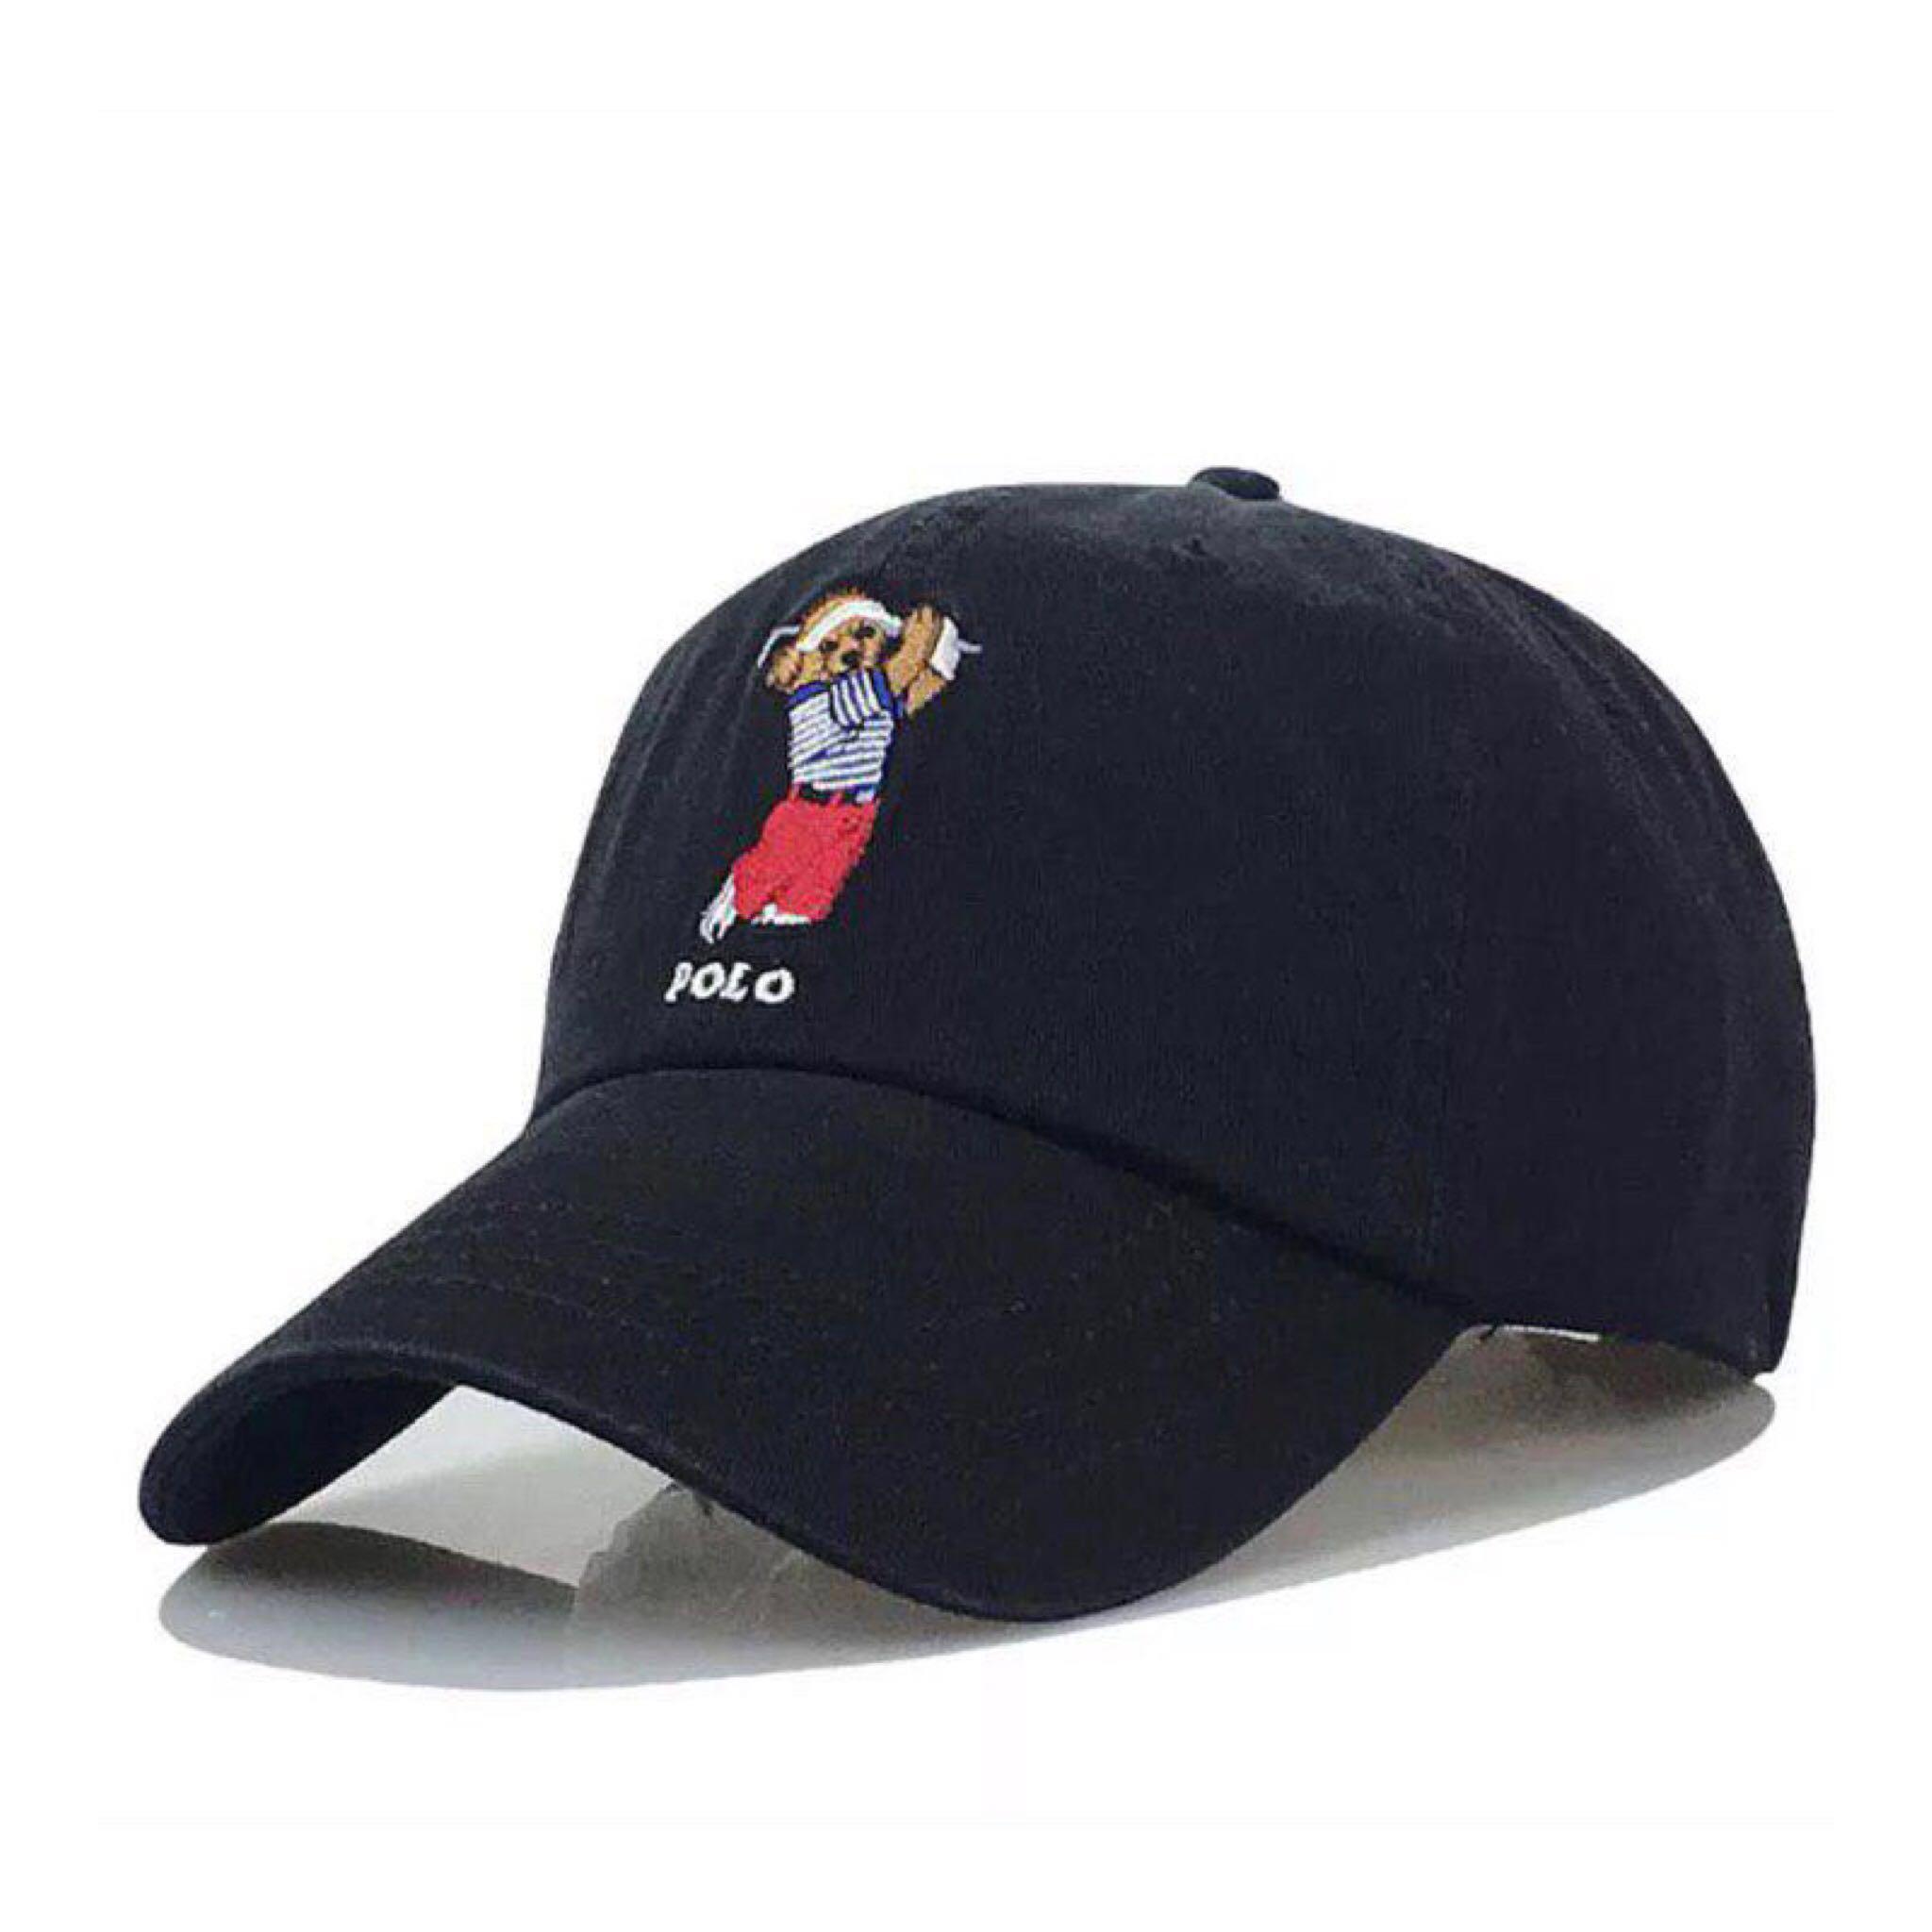 polo bear golf hat